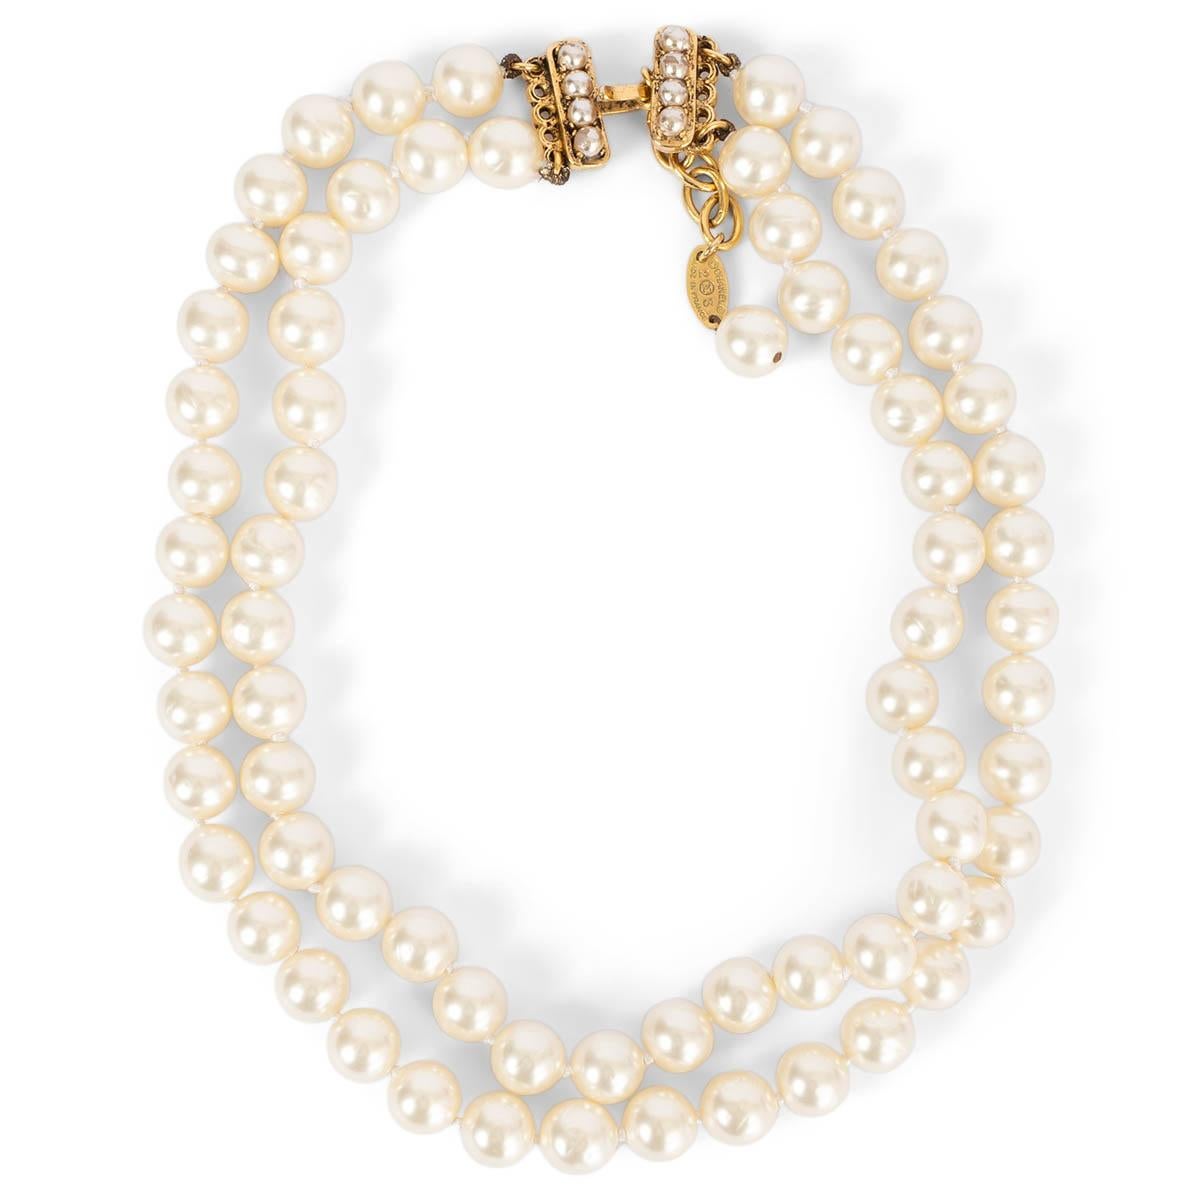 100% authentique Collier Chanel vintage double tour en fausses perles avec fermeture à crochet en métal doré. Elle a été portée et les petites perles de la fermeture présentent quelques traces d'usure. En général en excellent